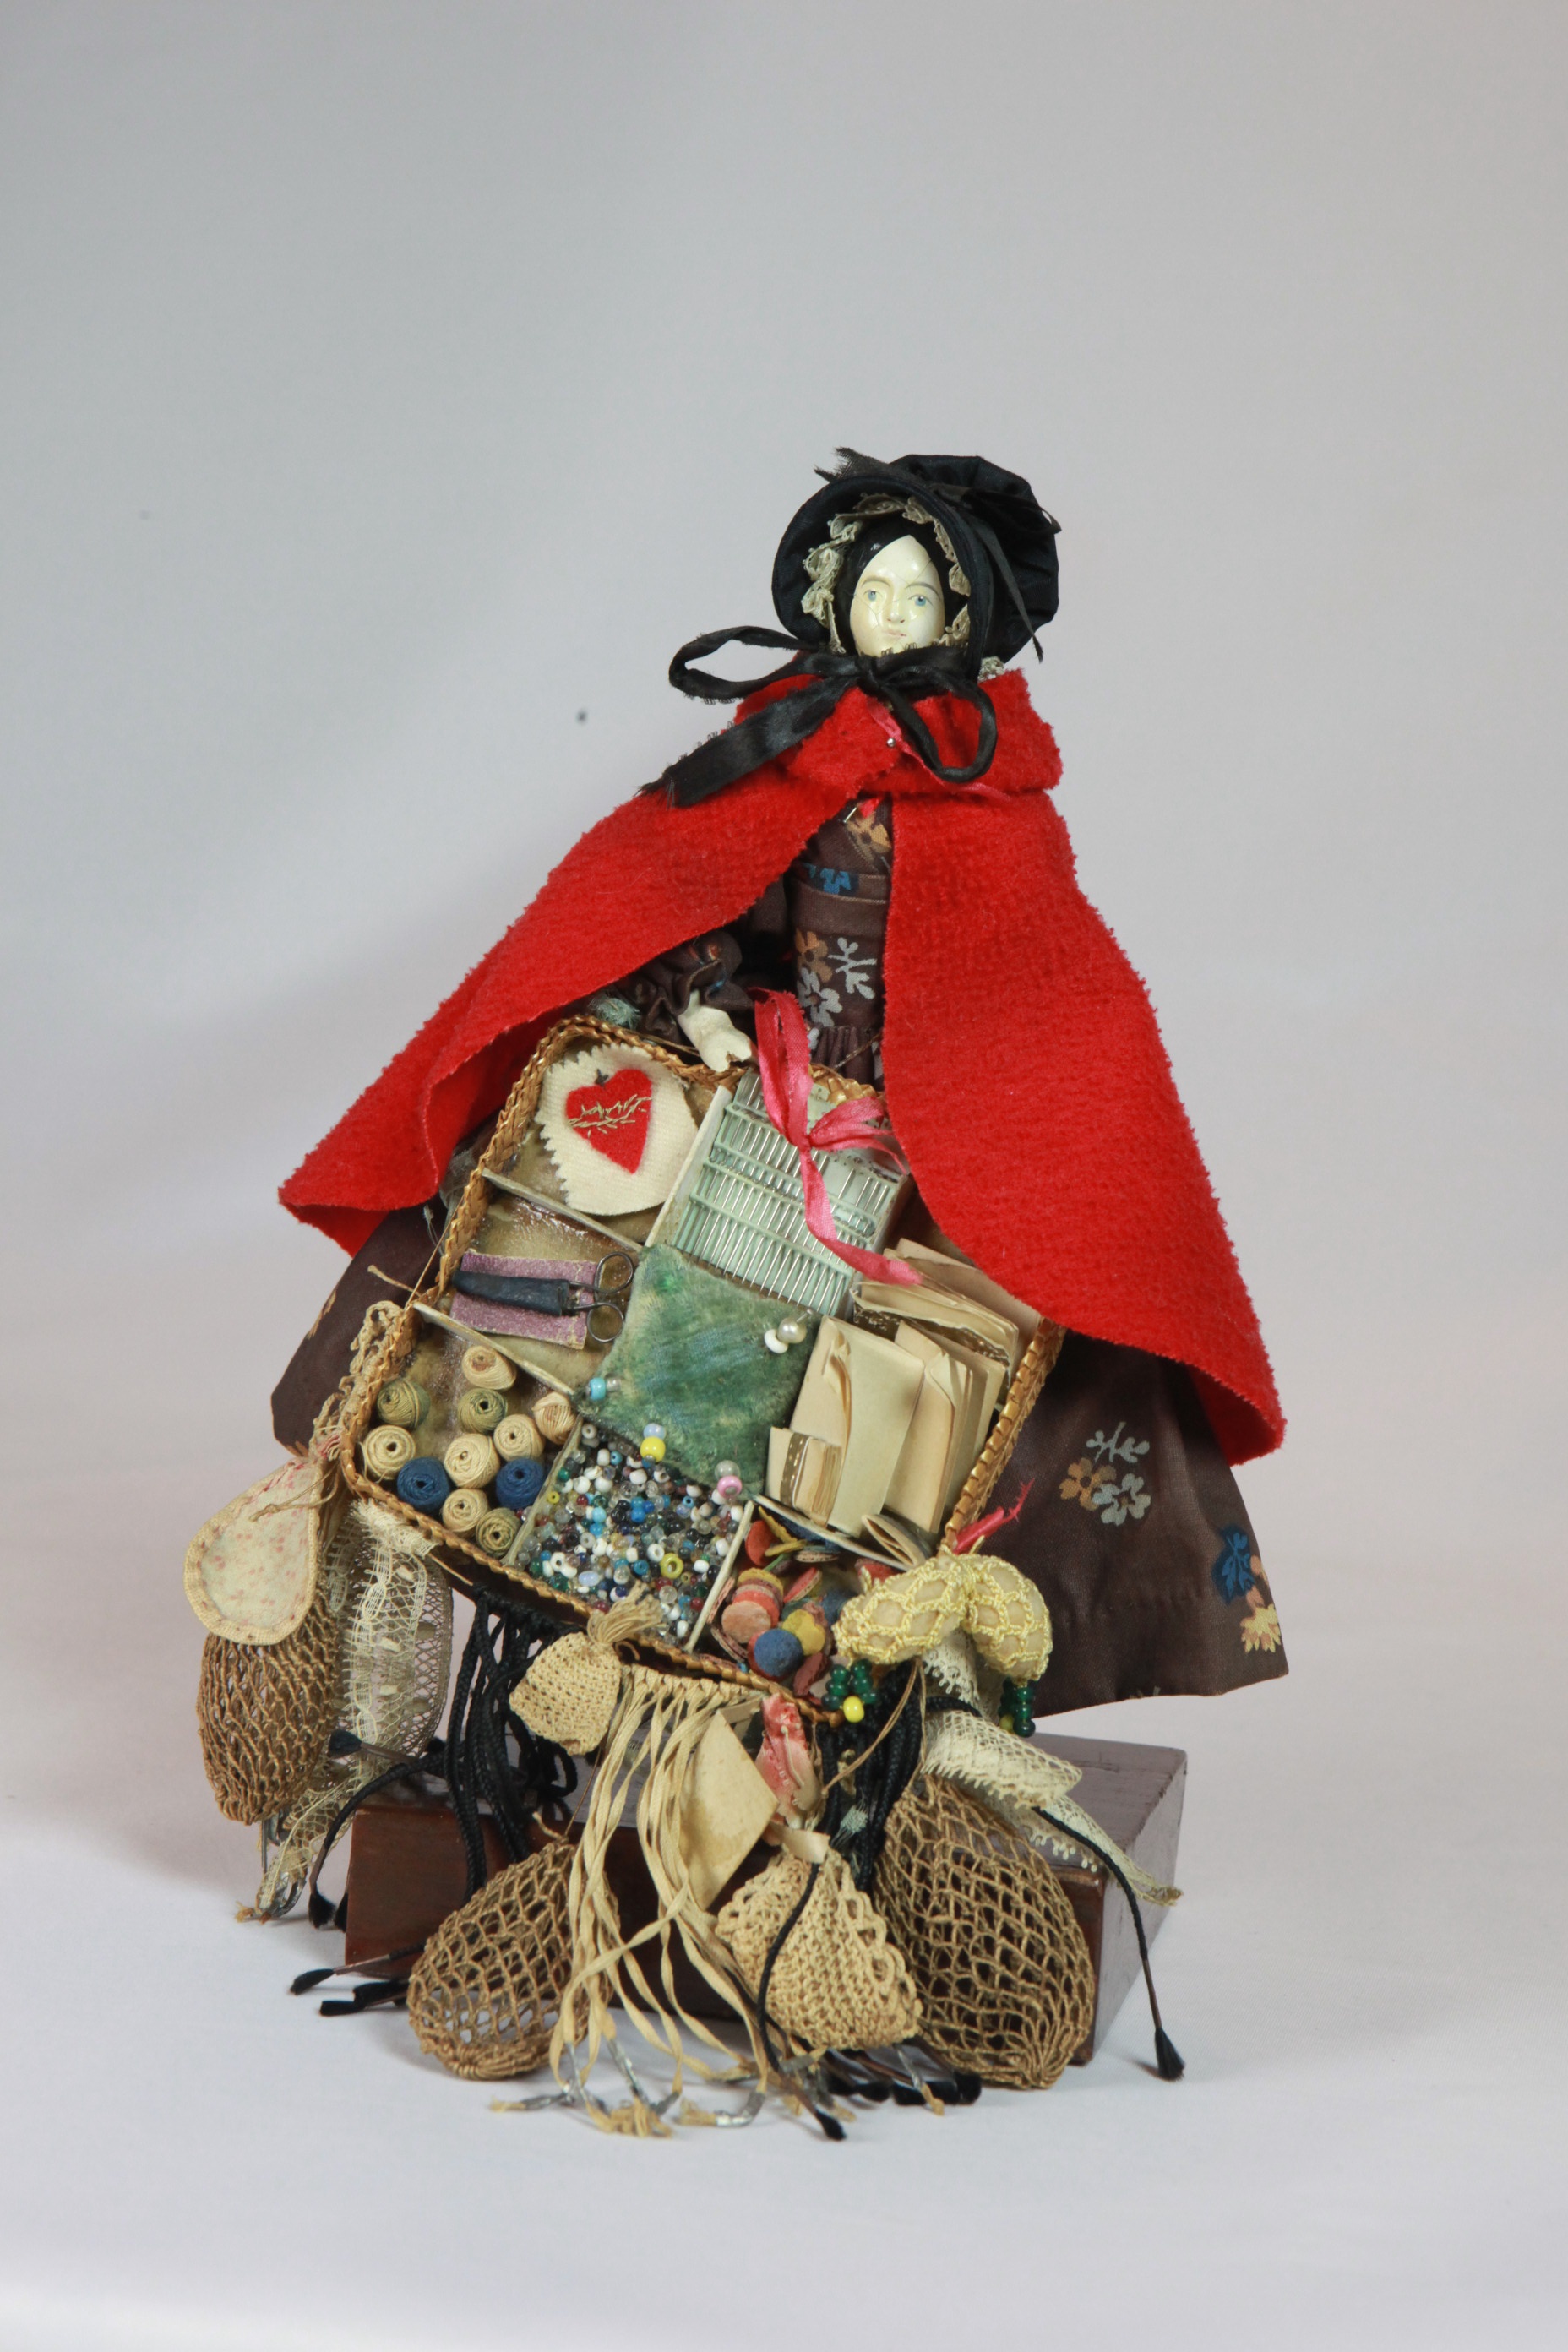 Pedlar Doll (Das Kleine Museum - Spielzeug aus zwei Jahrhunderten CC BY)